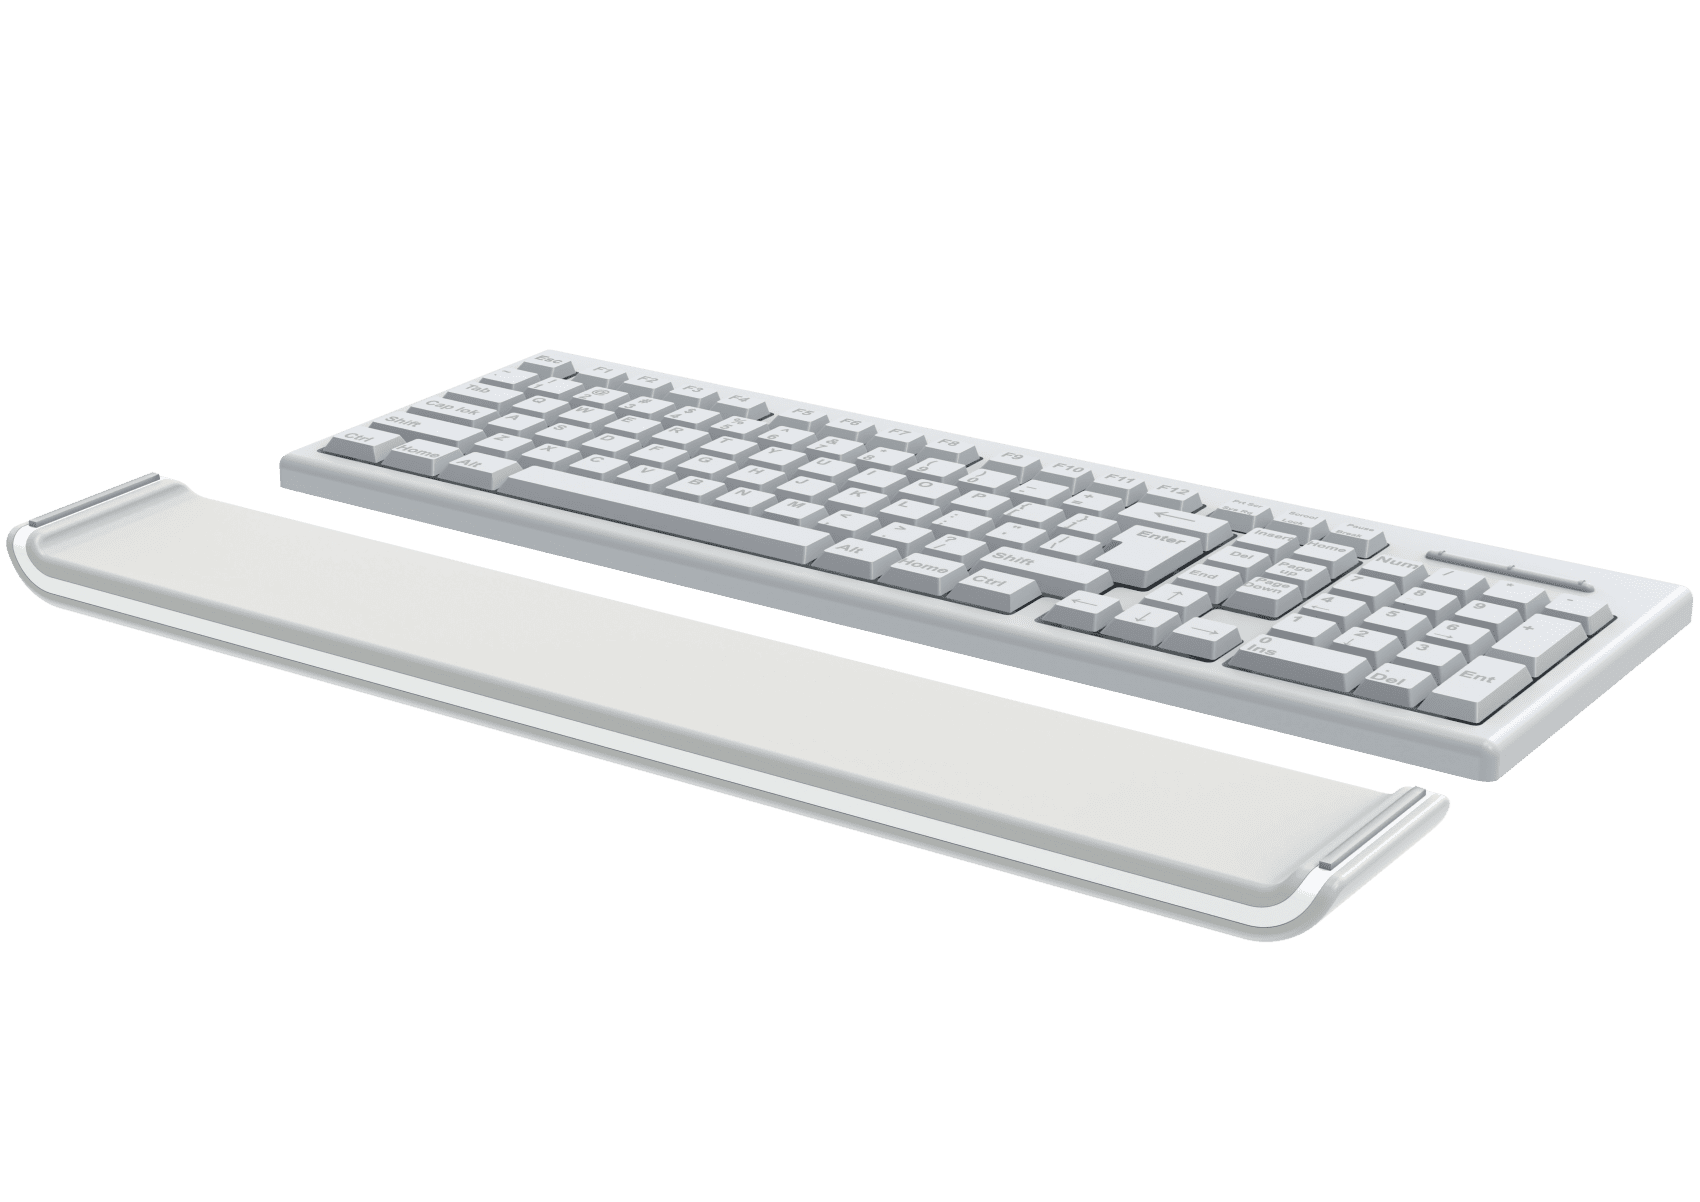 Leitz Acco Brands Ergo Cosy Verstellbare Handgelenkauflage für Tastaturen - Bürowelten.eu